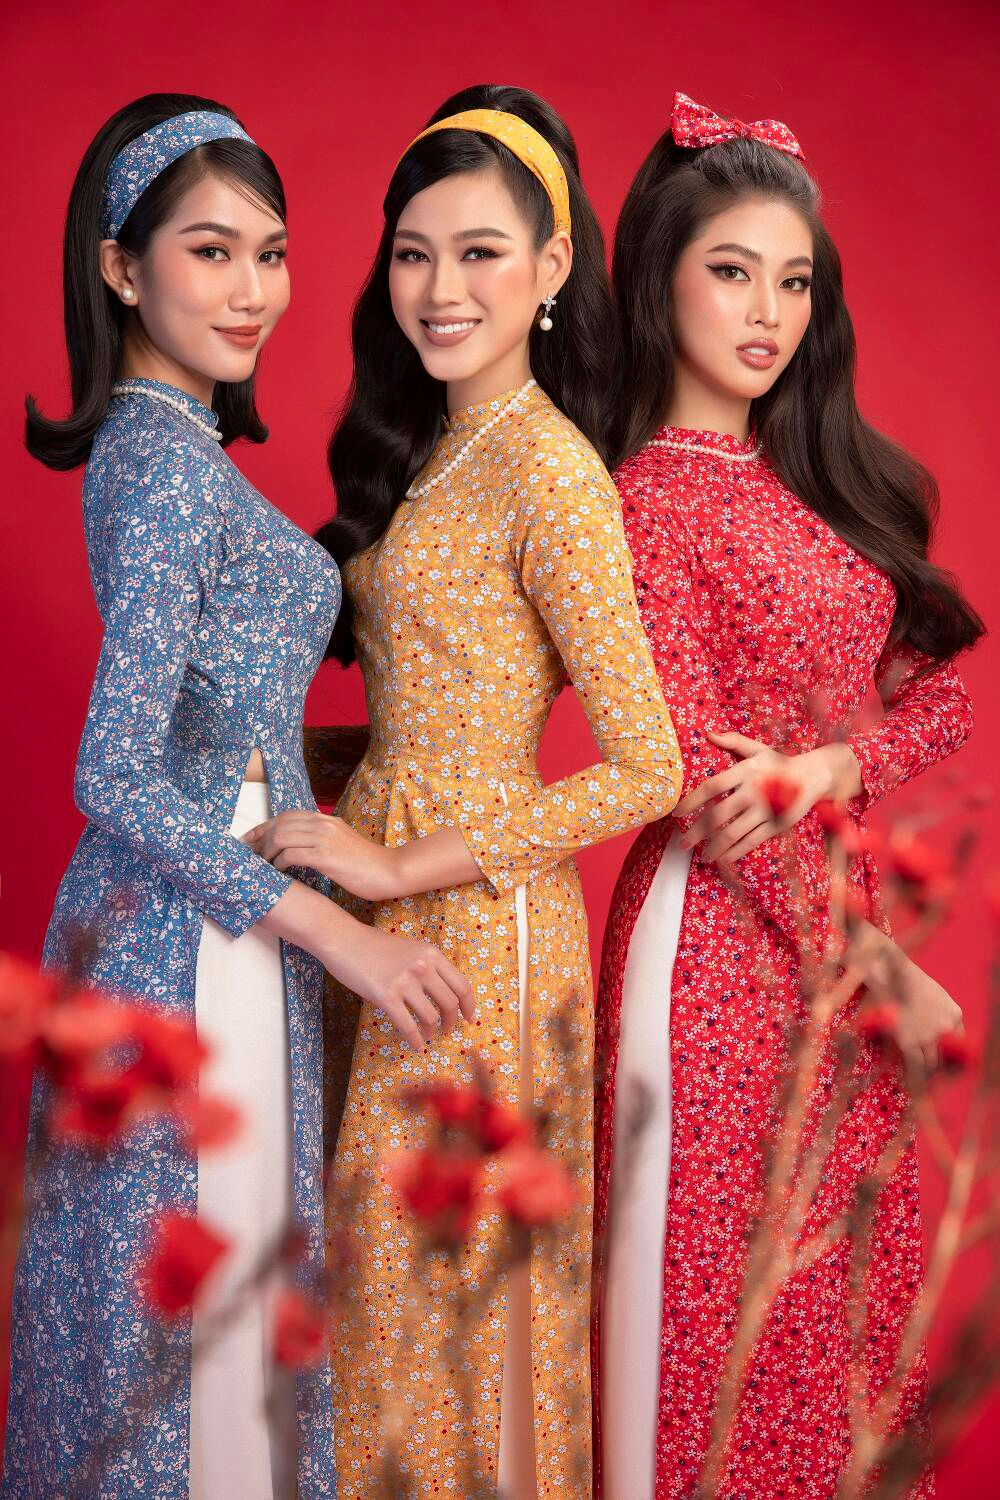 Top 3 Hoa hậu Việt Nam 2020 Đỗ Hà - Phương Anh - Ngọc Thảo chào xuân 'ngọt lịm' với áo dài cổ điển Ảnh 1